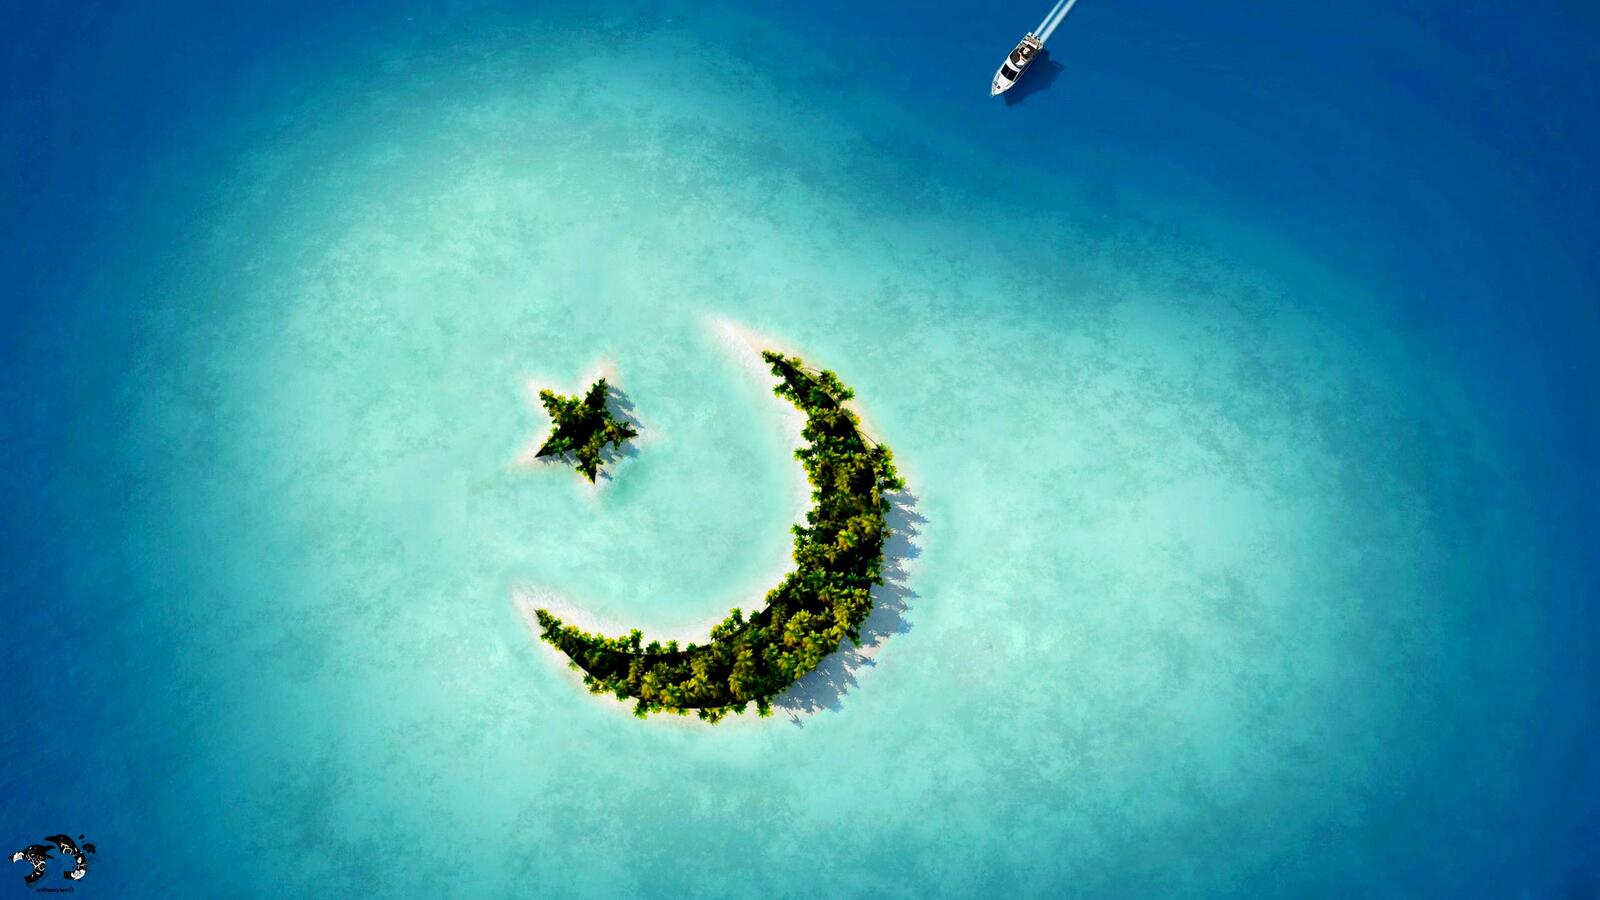 Бесплатное фото Обои с изображением острова на глубине моря в виде полумесяца со звездой